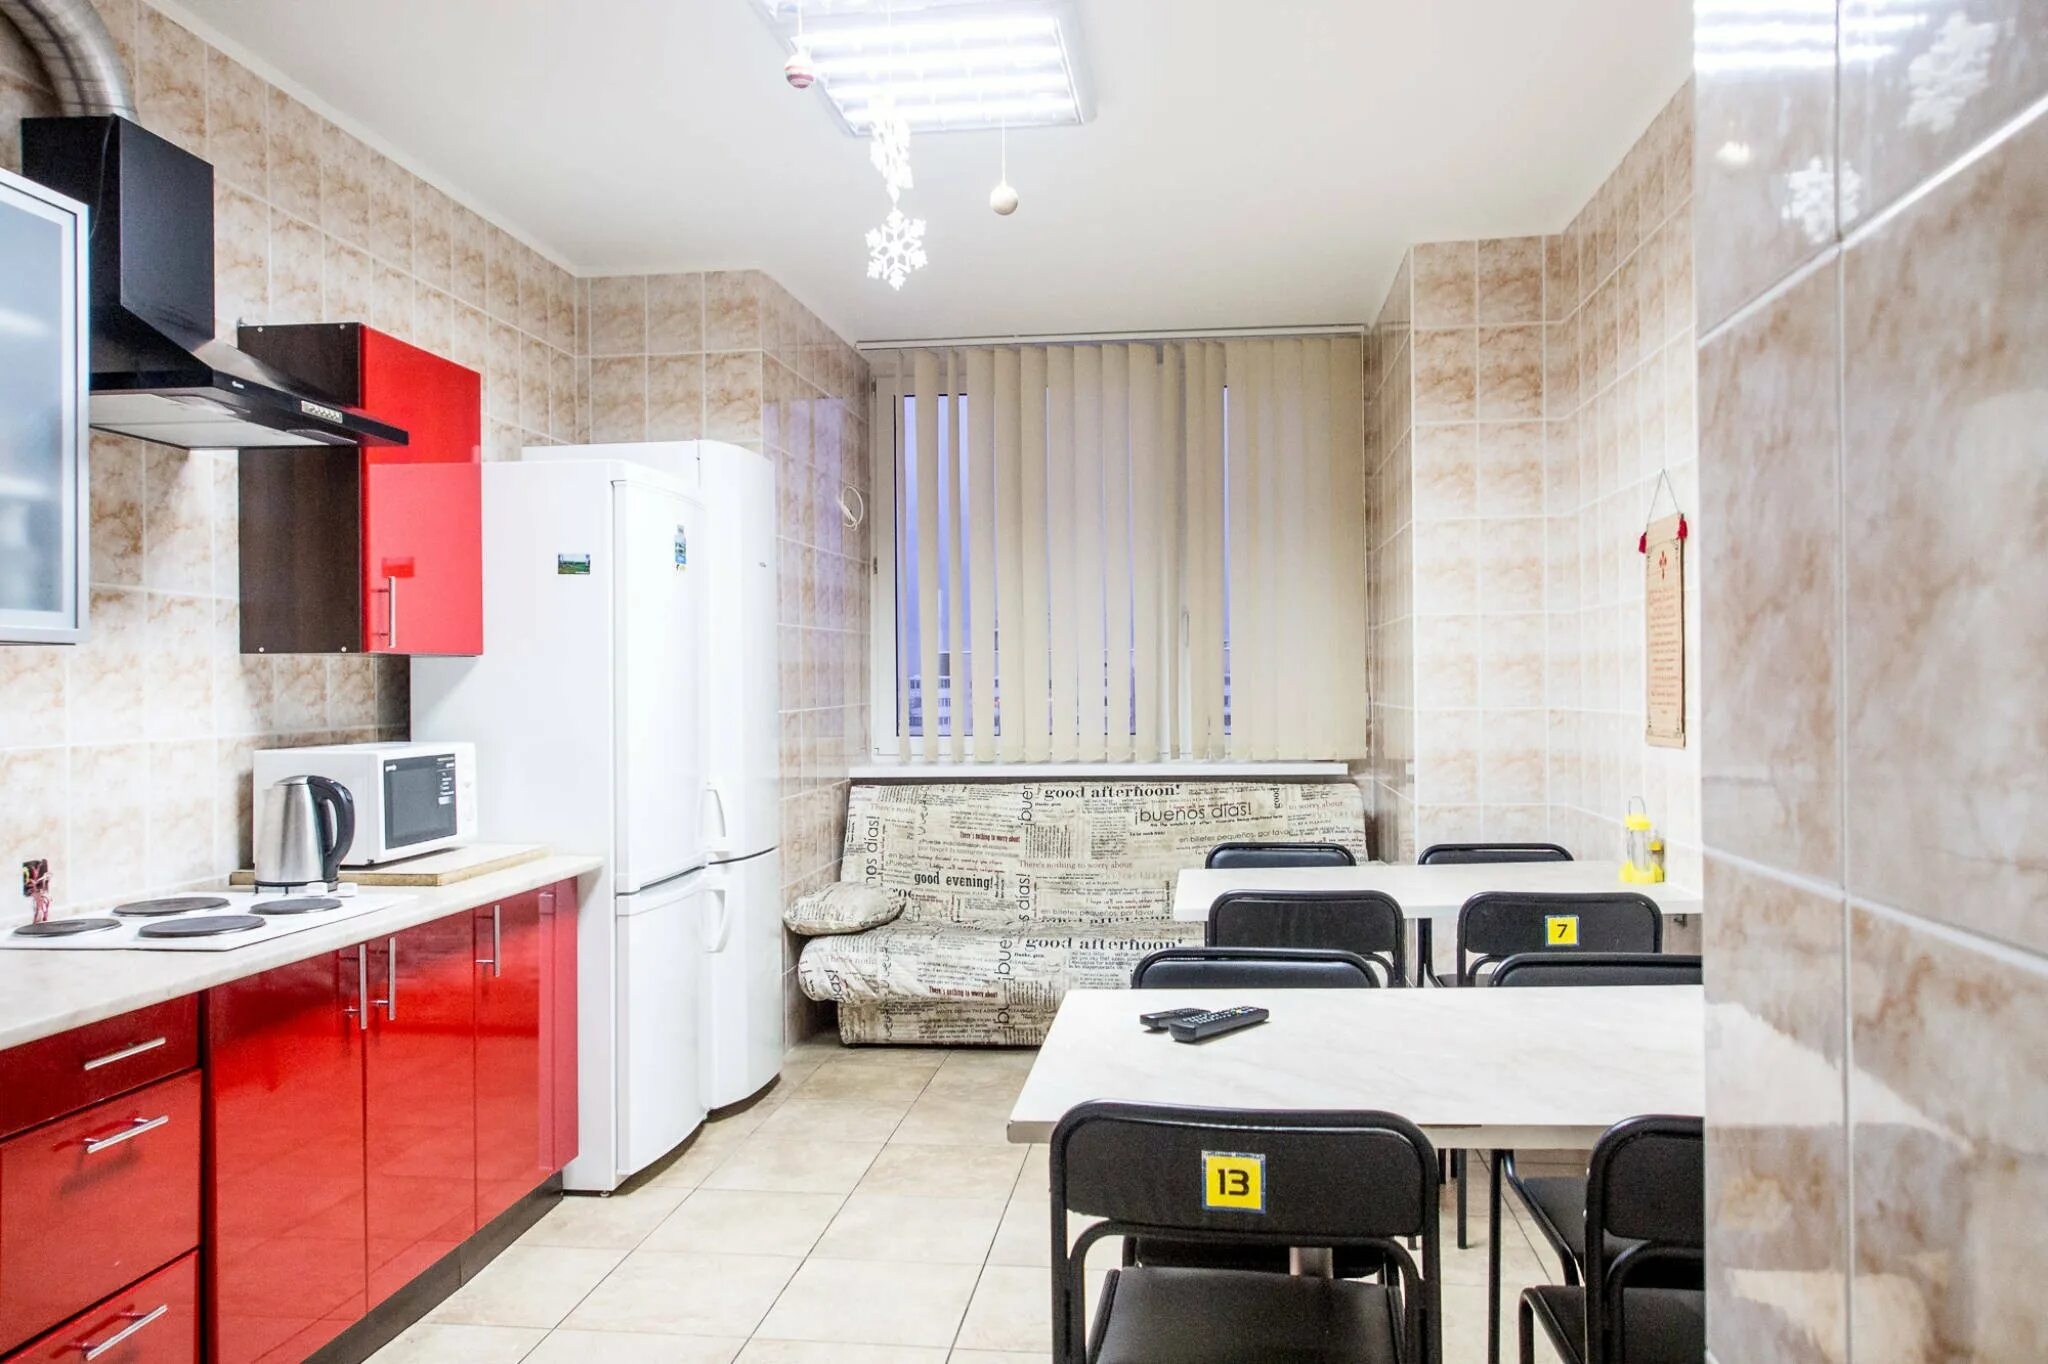 Кухня в общежитии. Интерьер кухни в общежитии. Европейское общежитие кухня. Кухня в хостеле. Общая кухня в общежитии